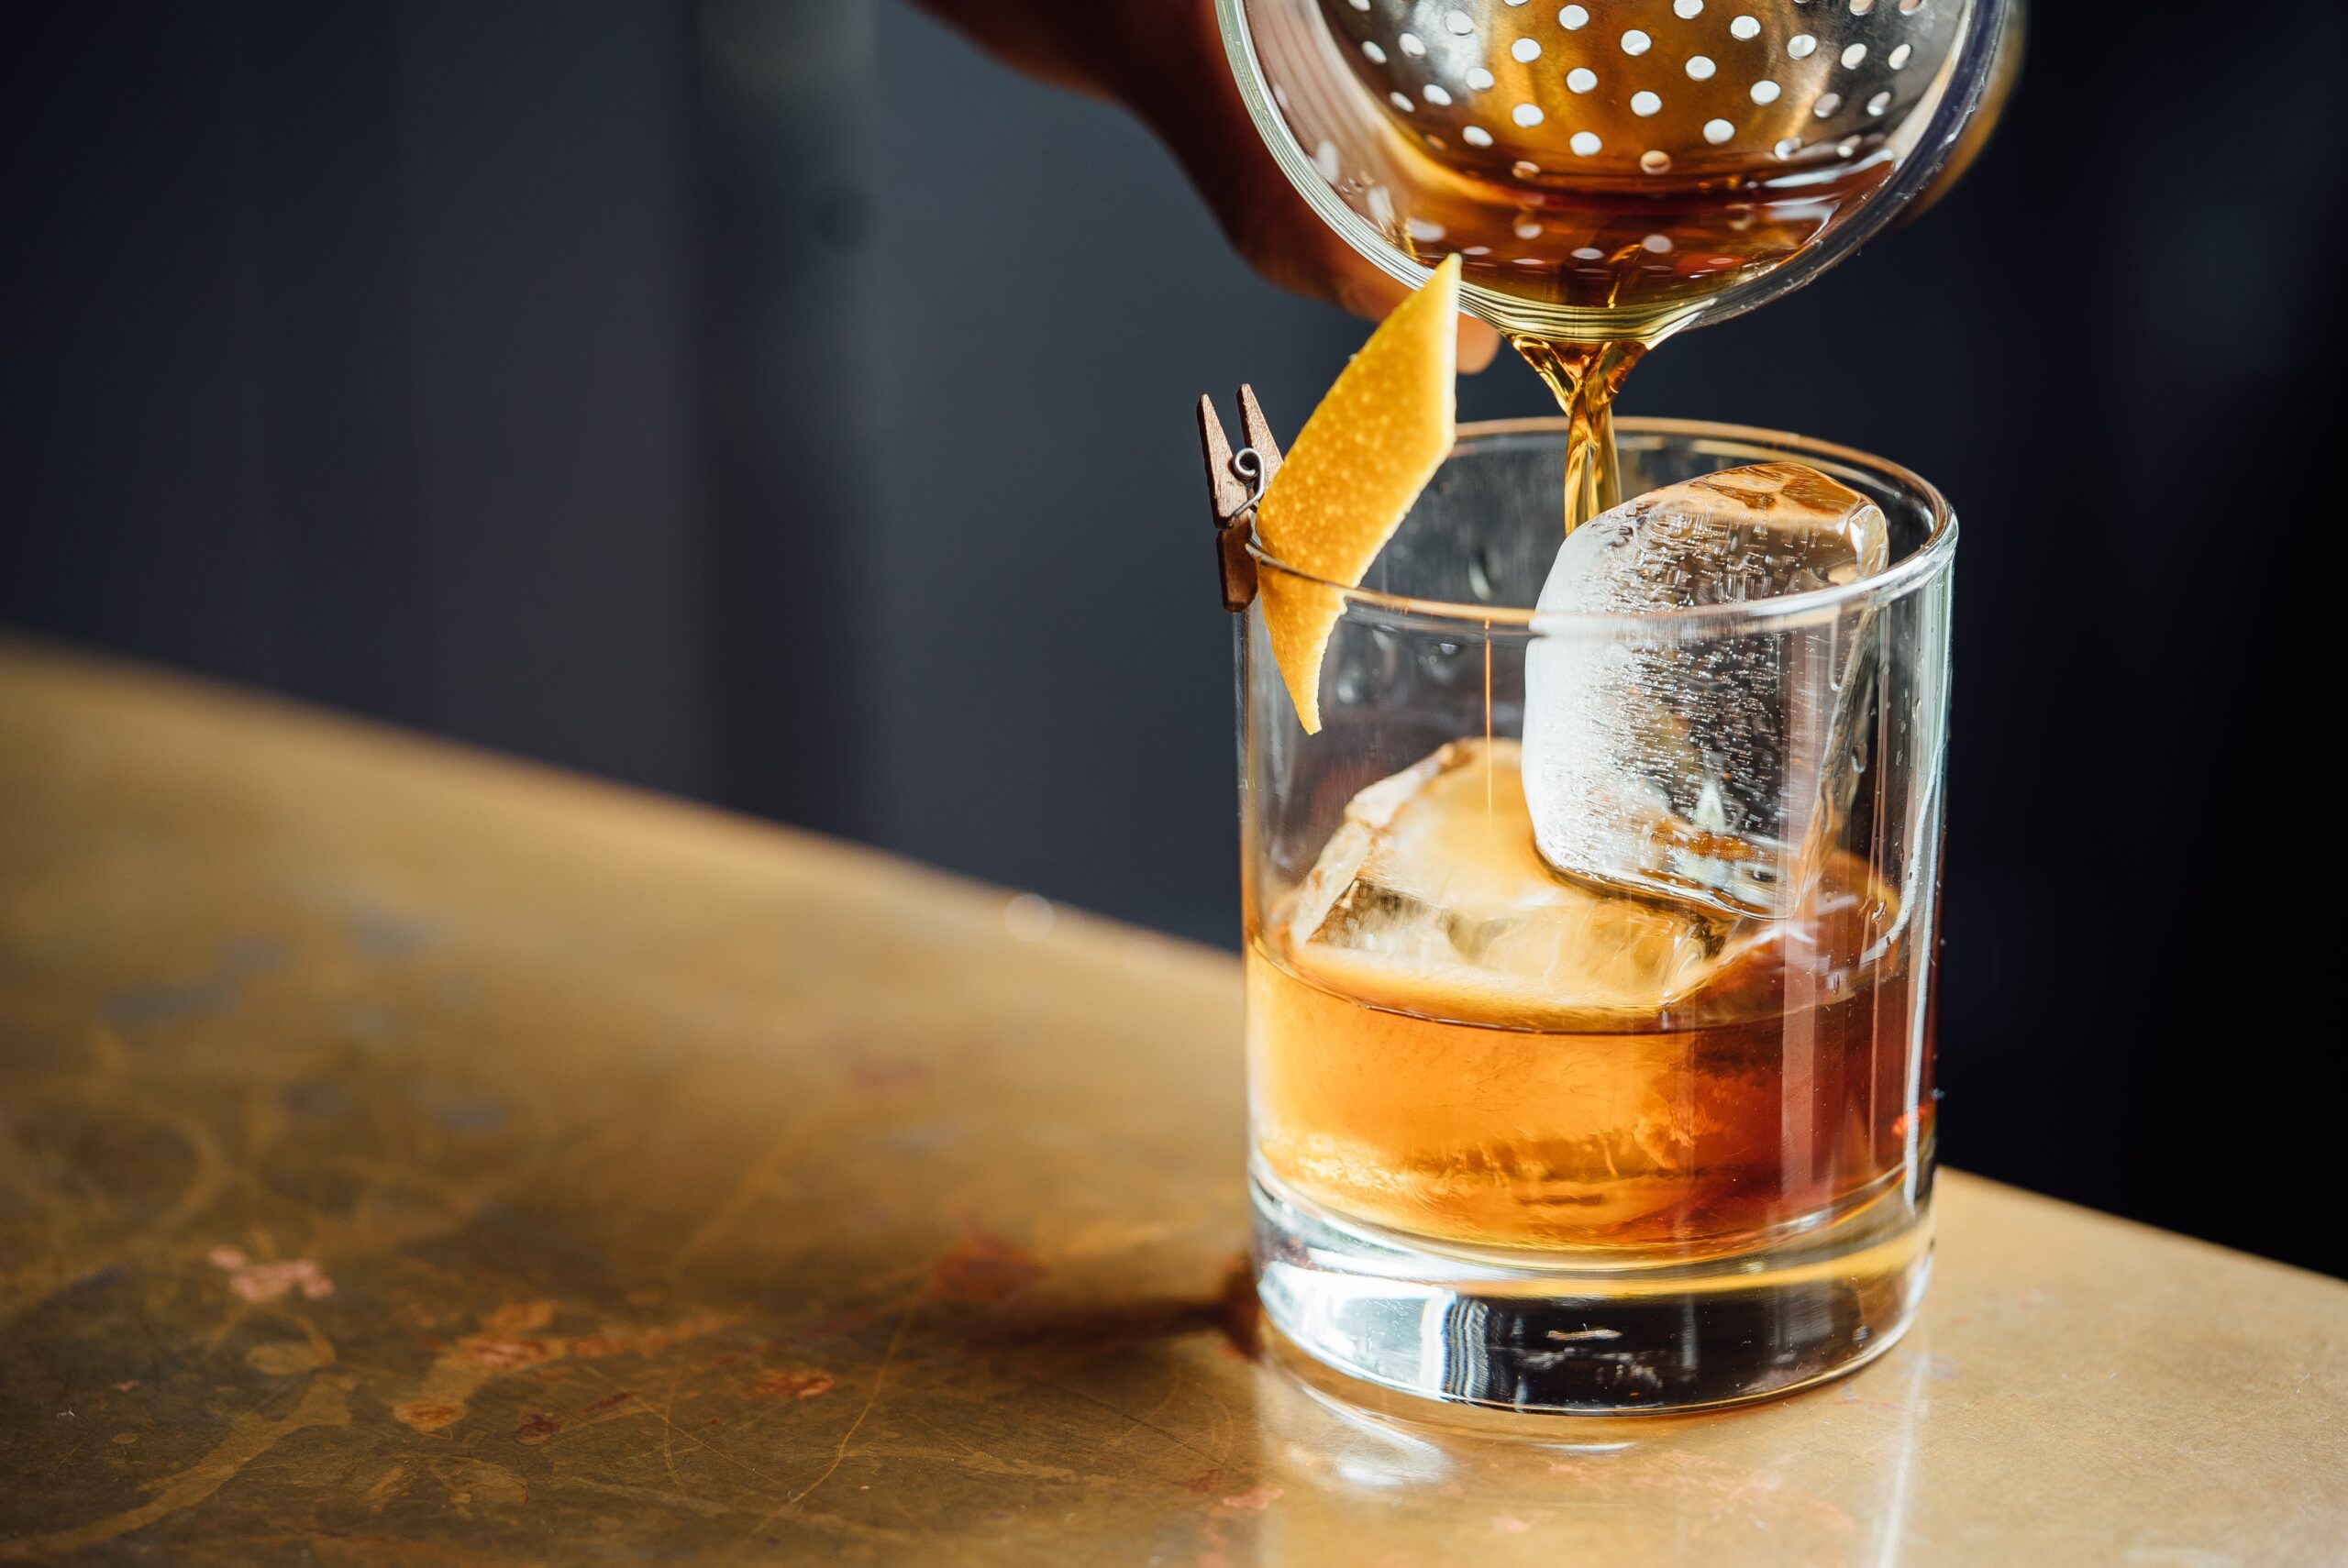 How To Make Bad Whiskey Taste Good